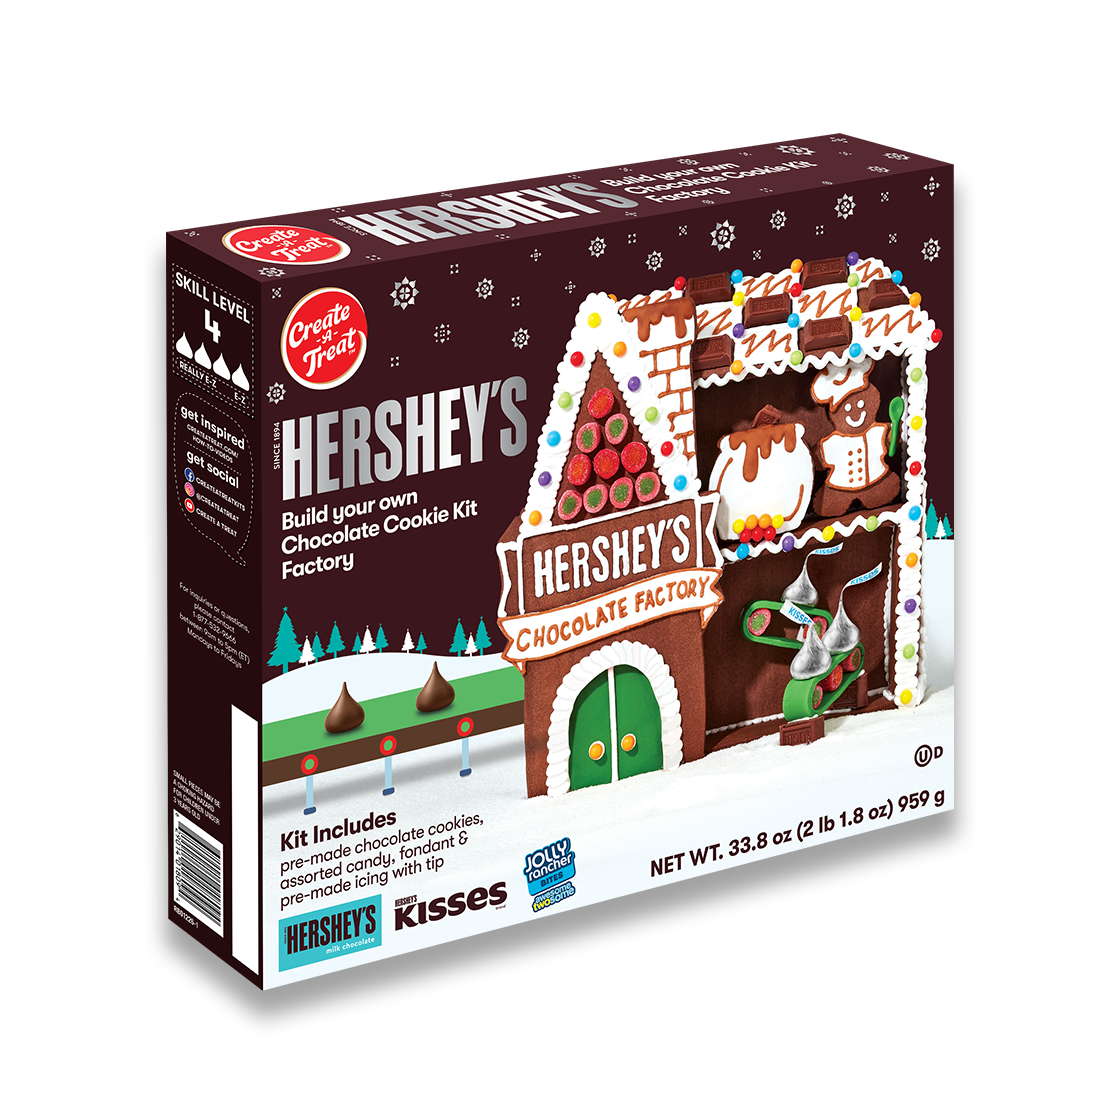 Create A Treat Hershey's Construye tu propia fábrica de kits de galletas de chocolate x 33.8 oz.